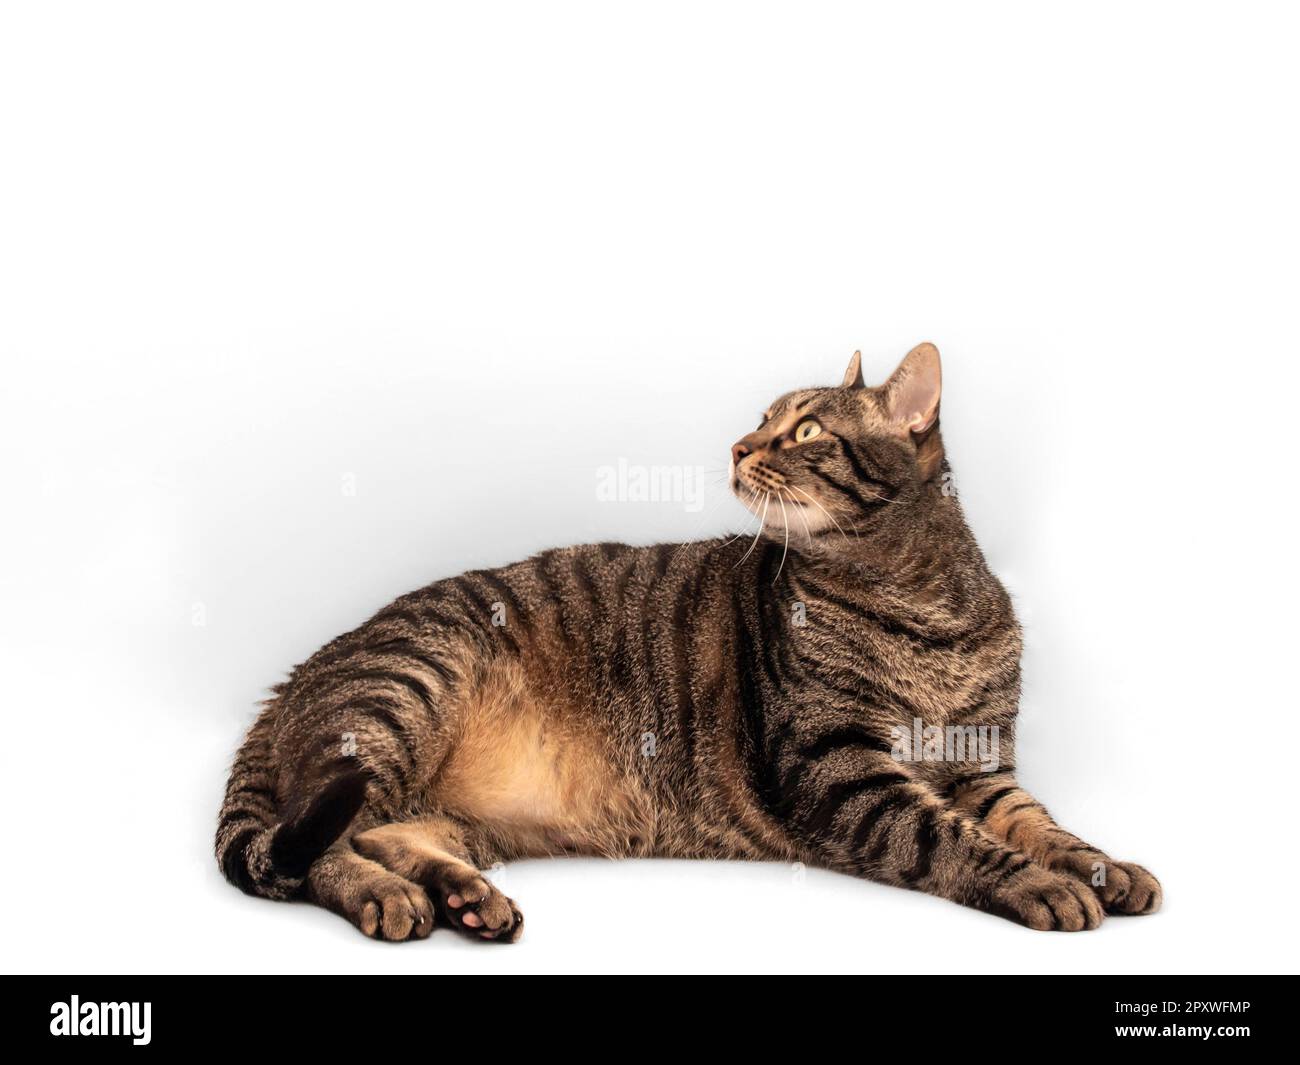 Stordimento grigio e nero gatto tabby con intricate luci arancioni giace in giù, il suo corpo rilassato e il suo sguardo verso l'alto a sinistra. I suoi occhi intensi Foto Stock